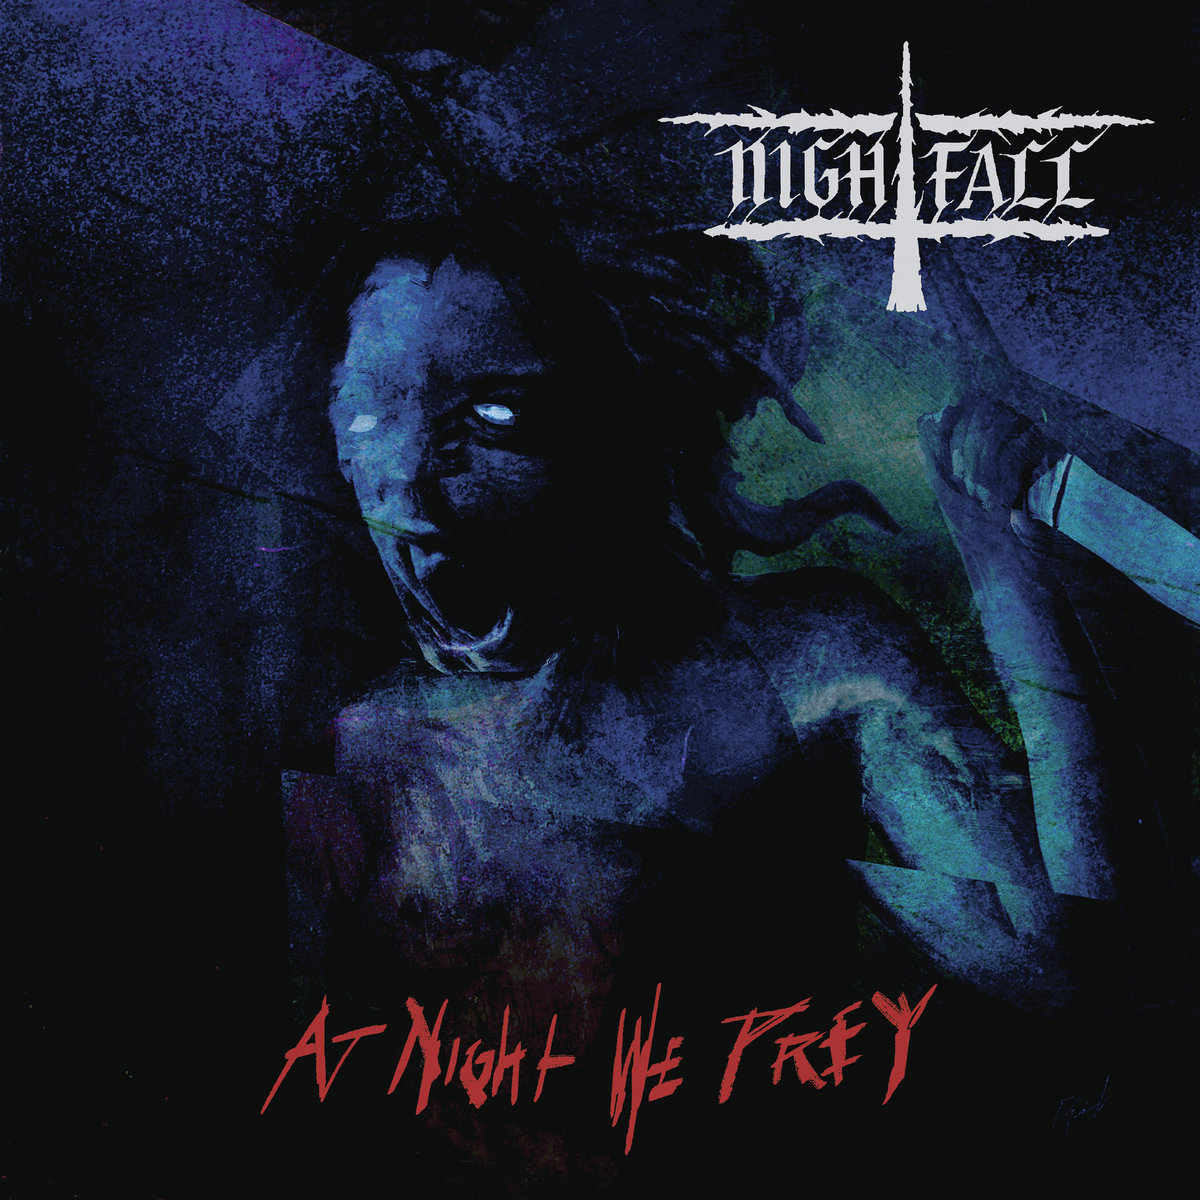 nightfall – at night we prey